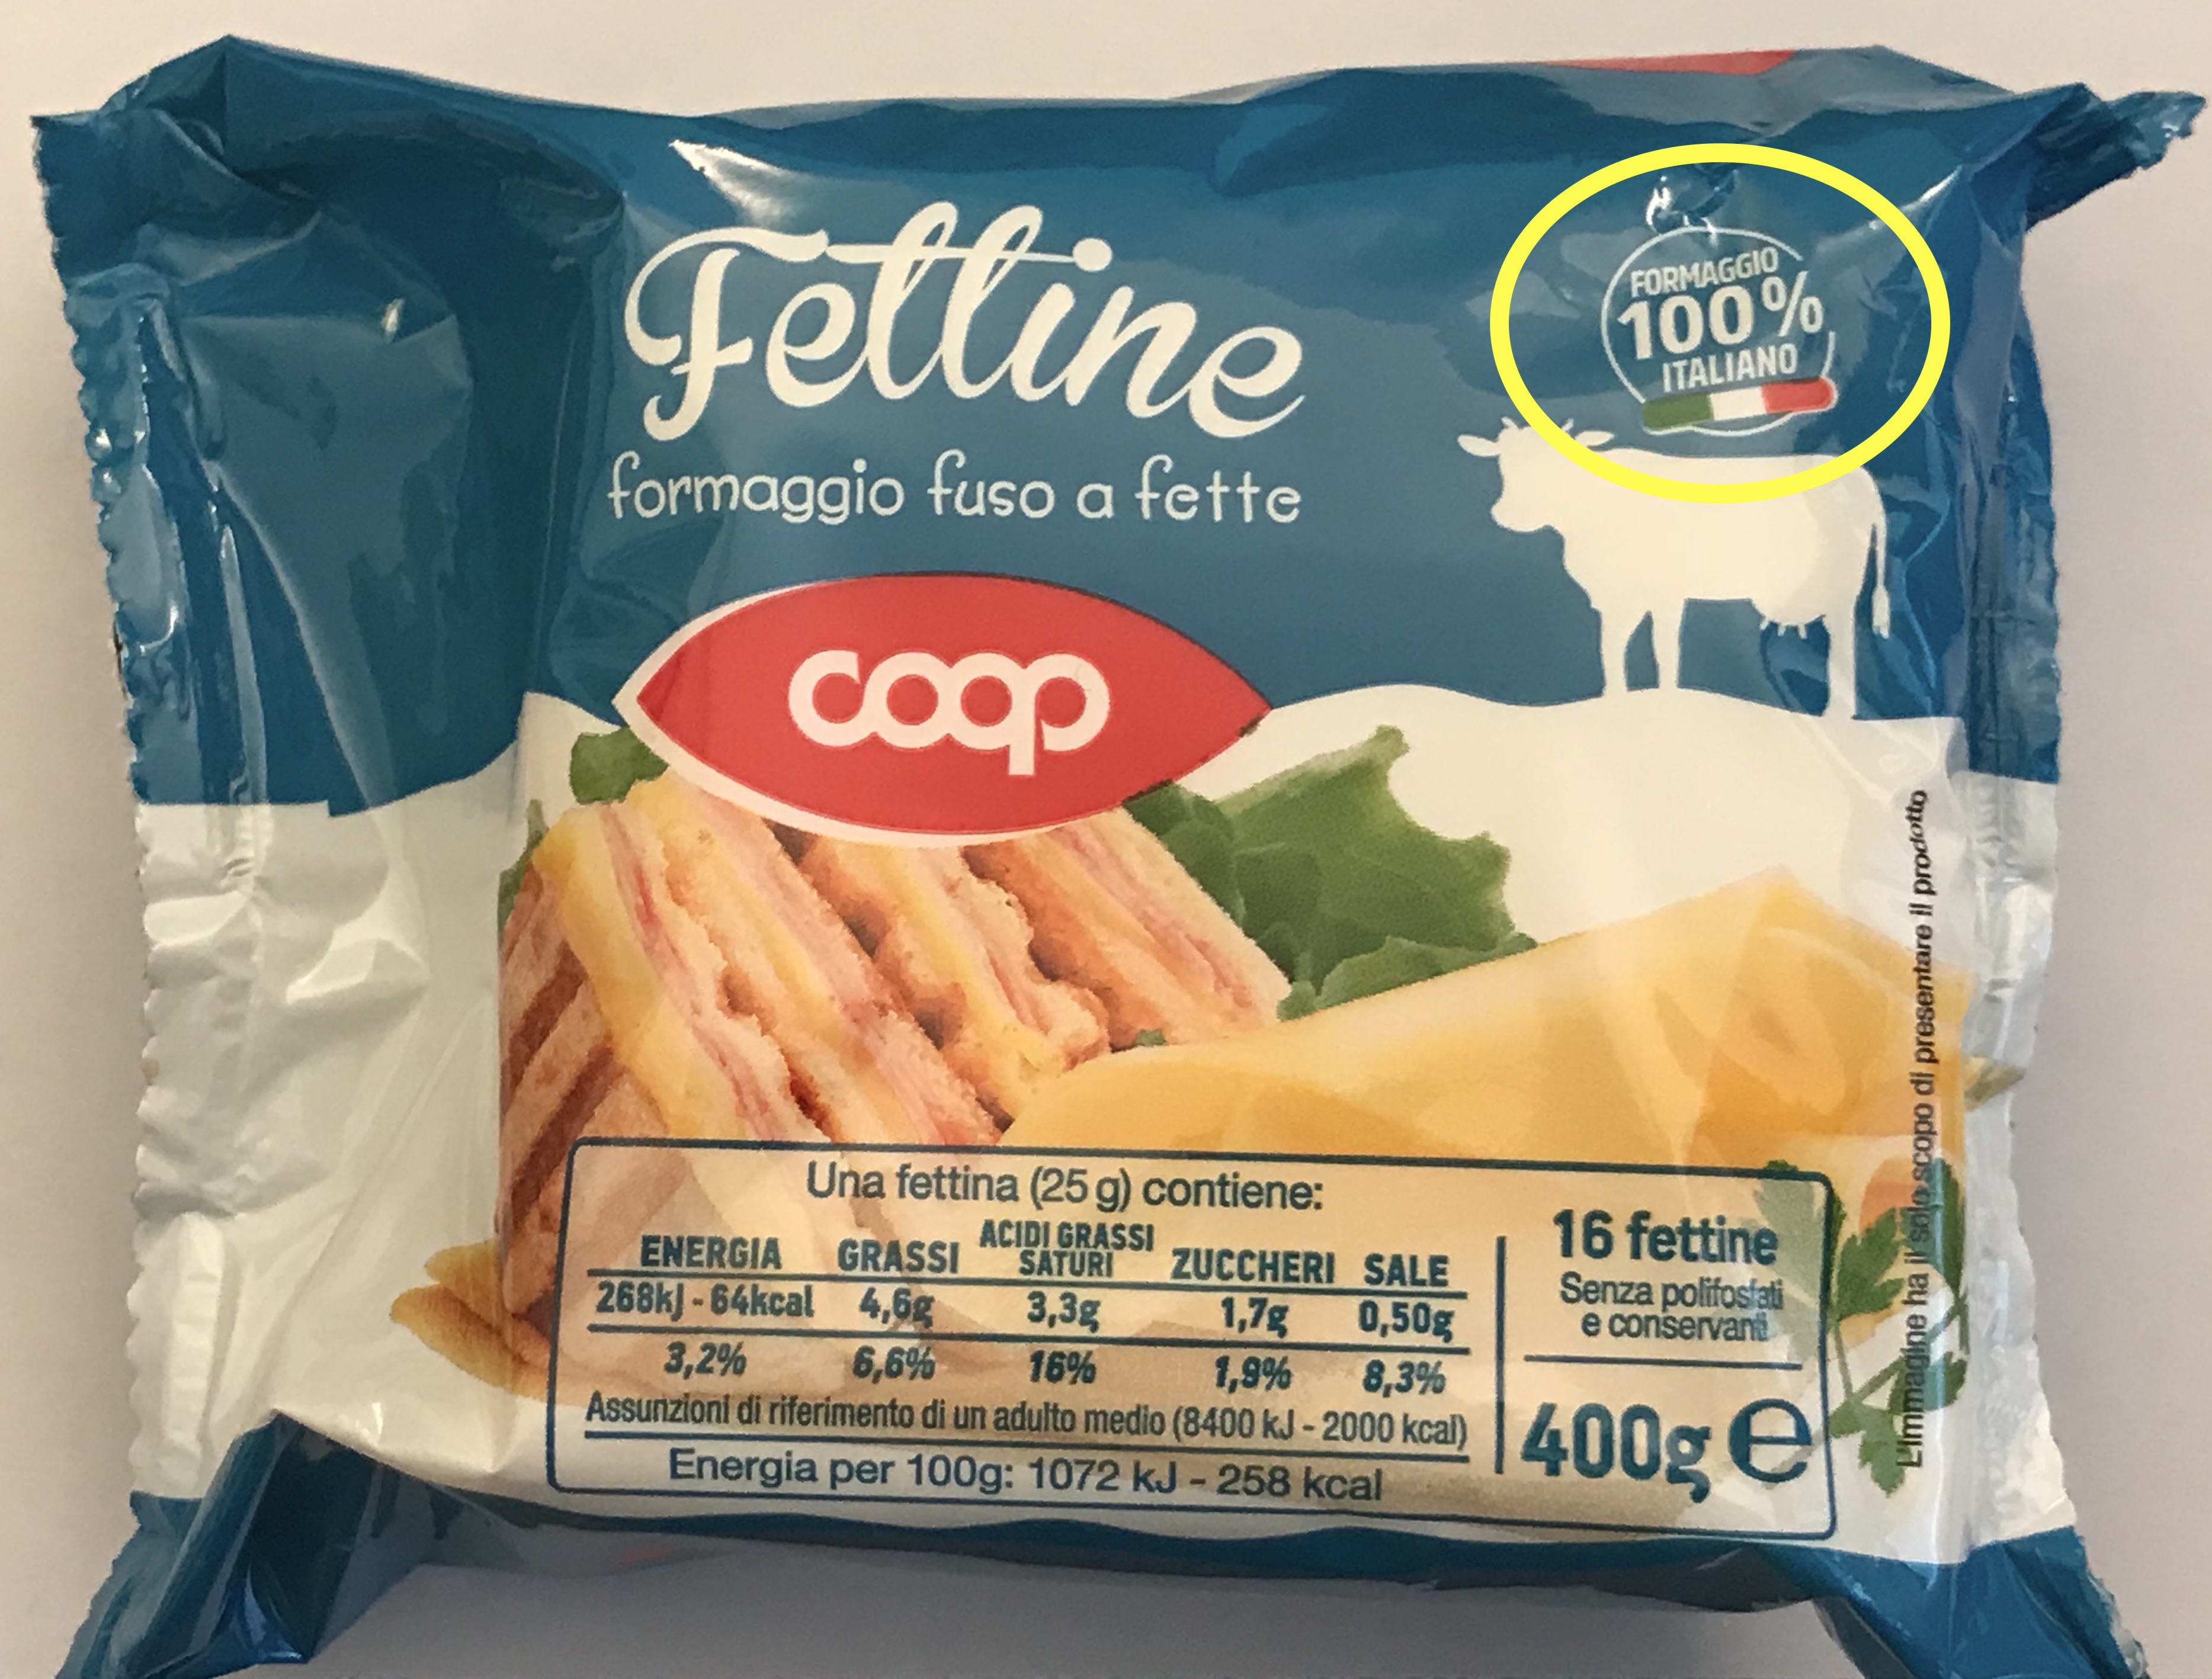 Fettine Coop: formaggio 100% italiano? Una lettrice ha dei dubbi